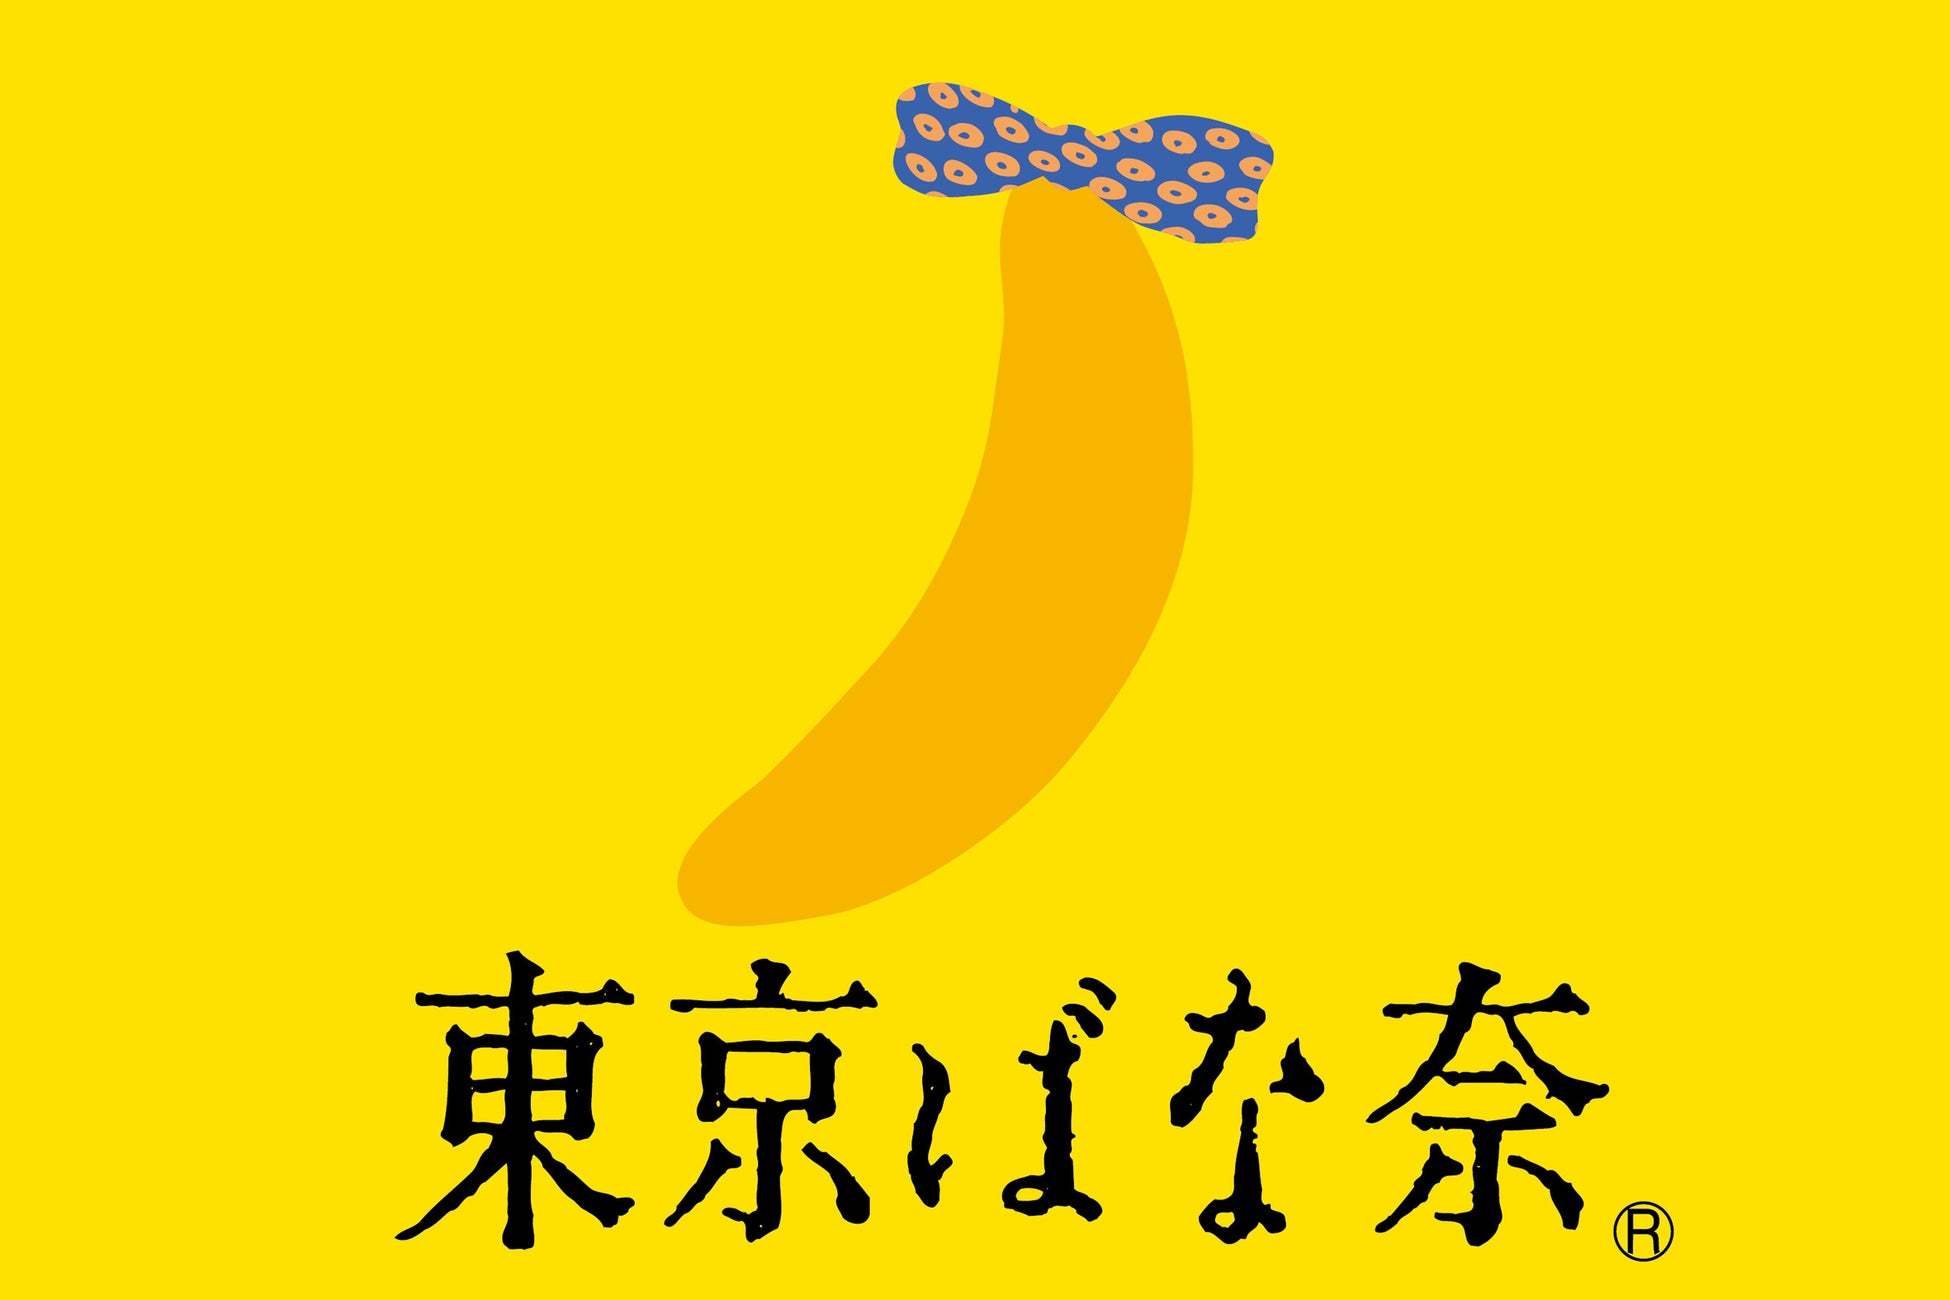 まるで飲む東京ばな奈！？完売続出のドリンク『東京ばな奈バナナミルク』が待望の復活！全国のファミリーマート限定で登場